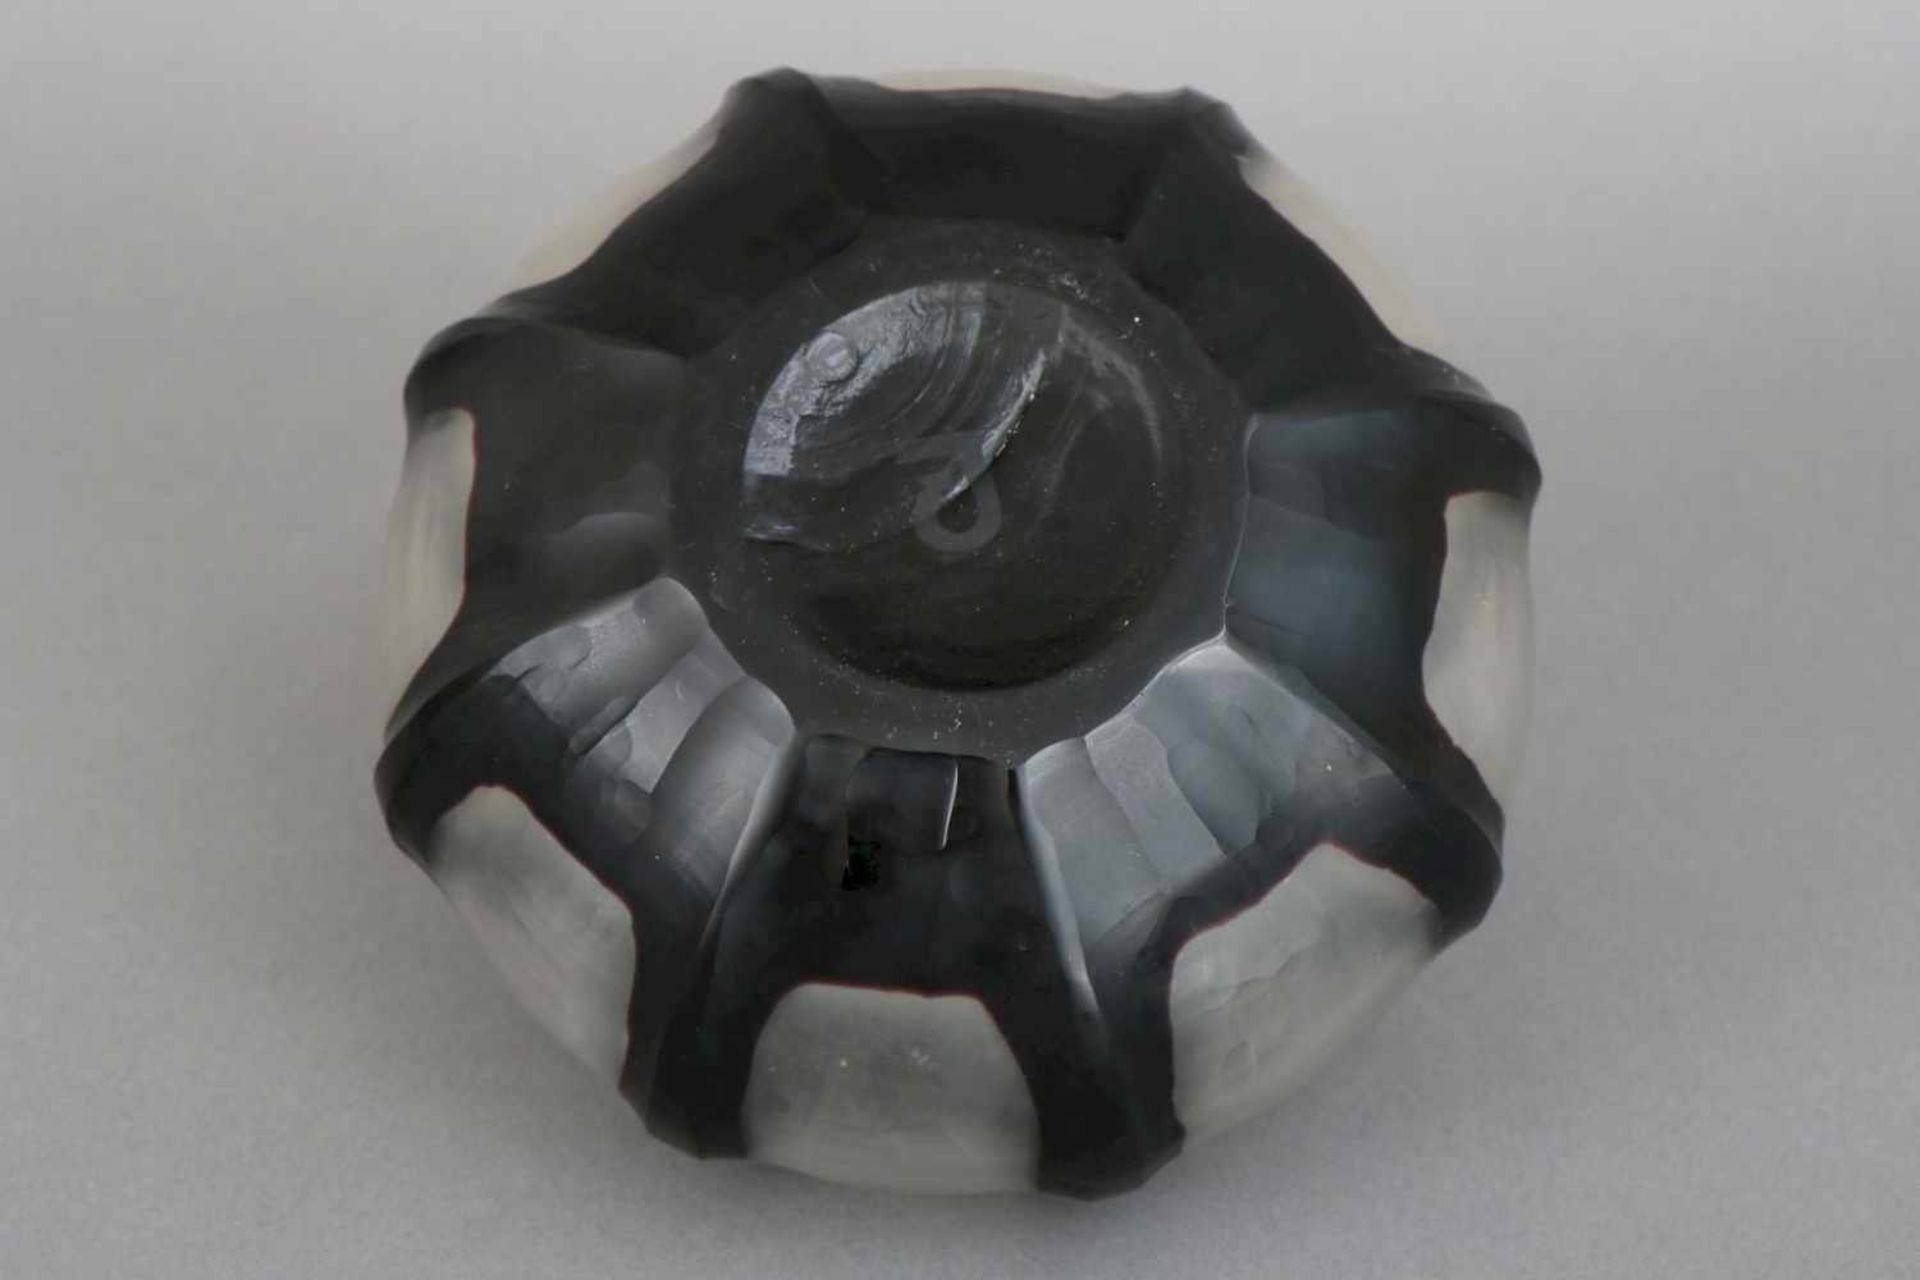 GUNTHER LAMBERT Vasefarbloses und schwarz überfangenes Glas, geschnitten und geätzt, bauchiges, - Bild 2 aus 2